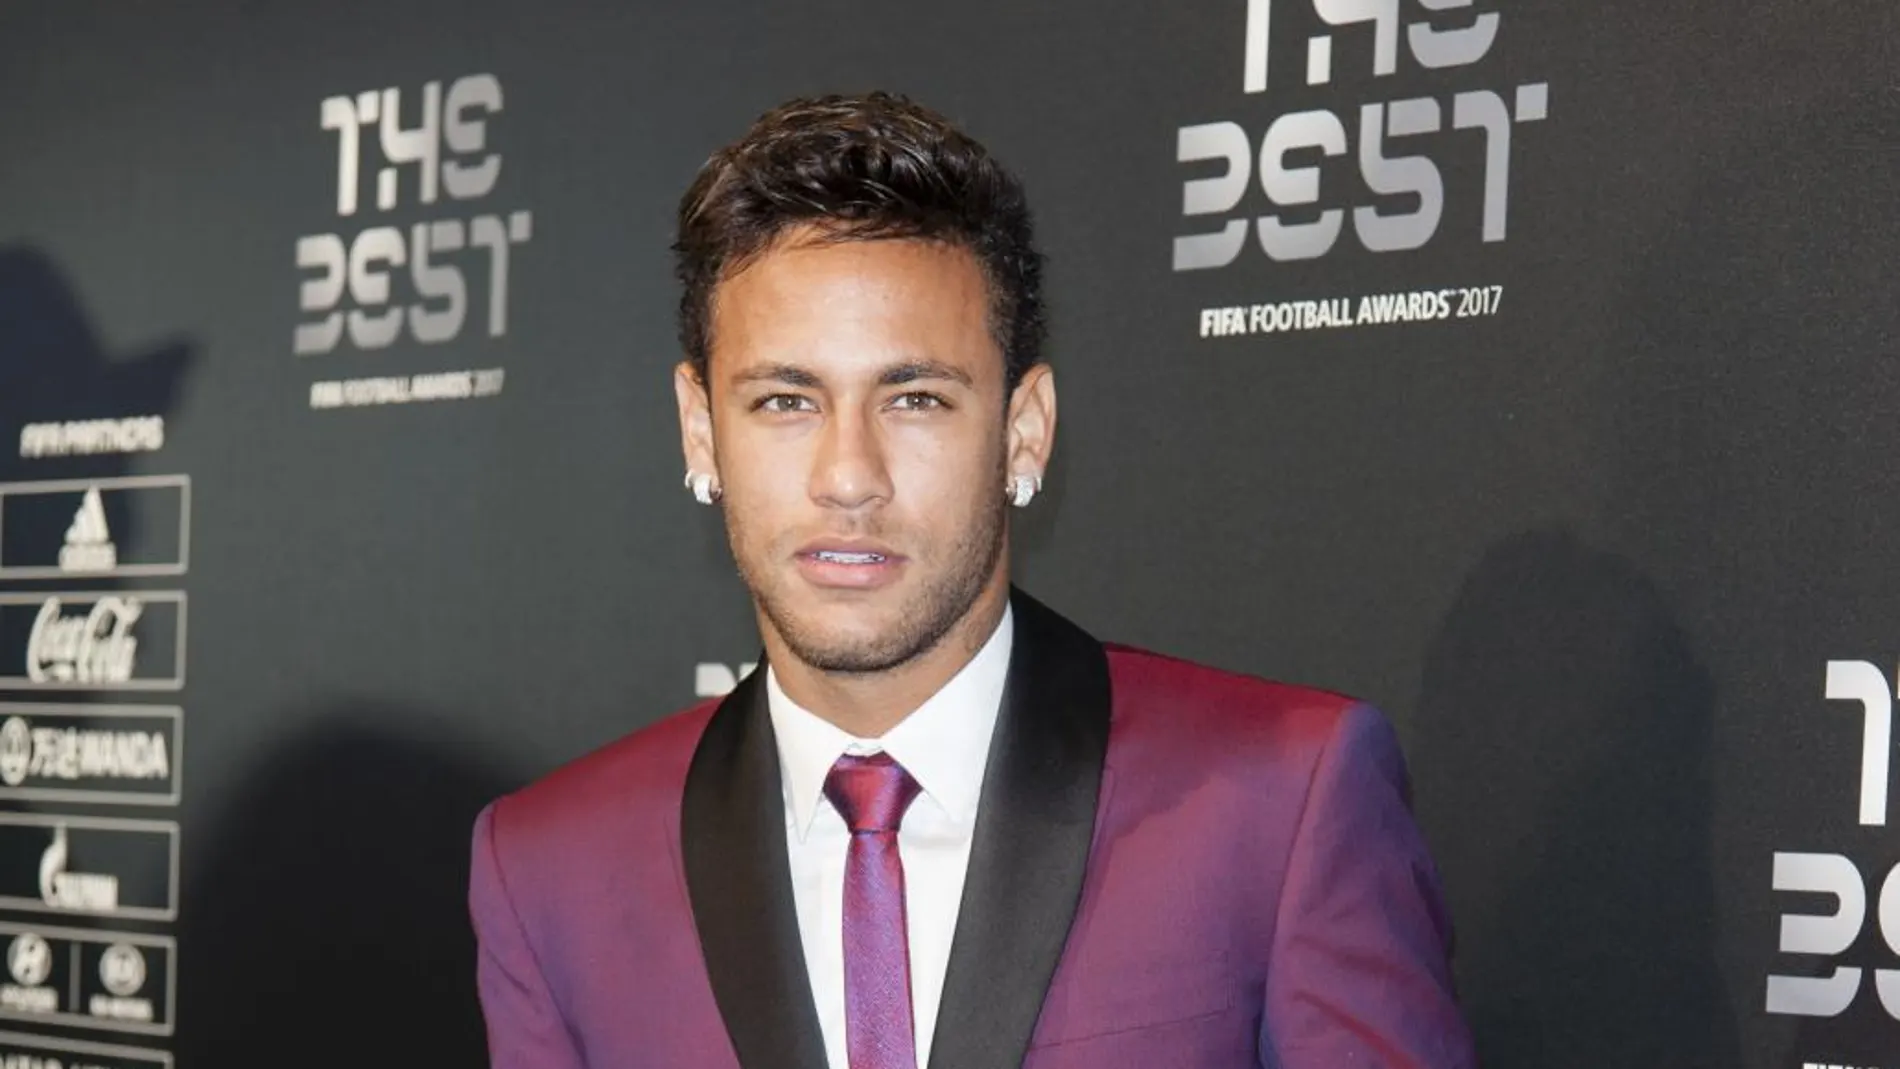 El futbolista brasileño Neymar